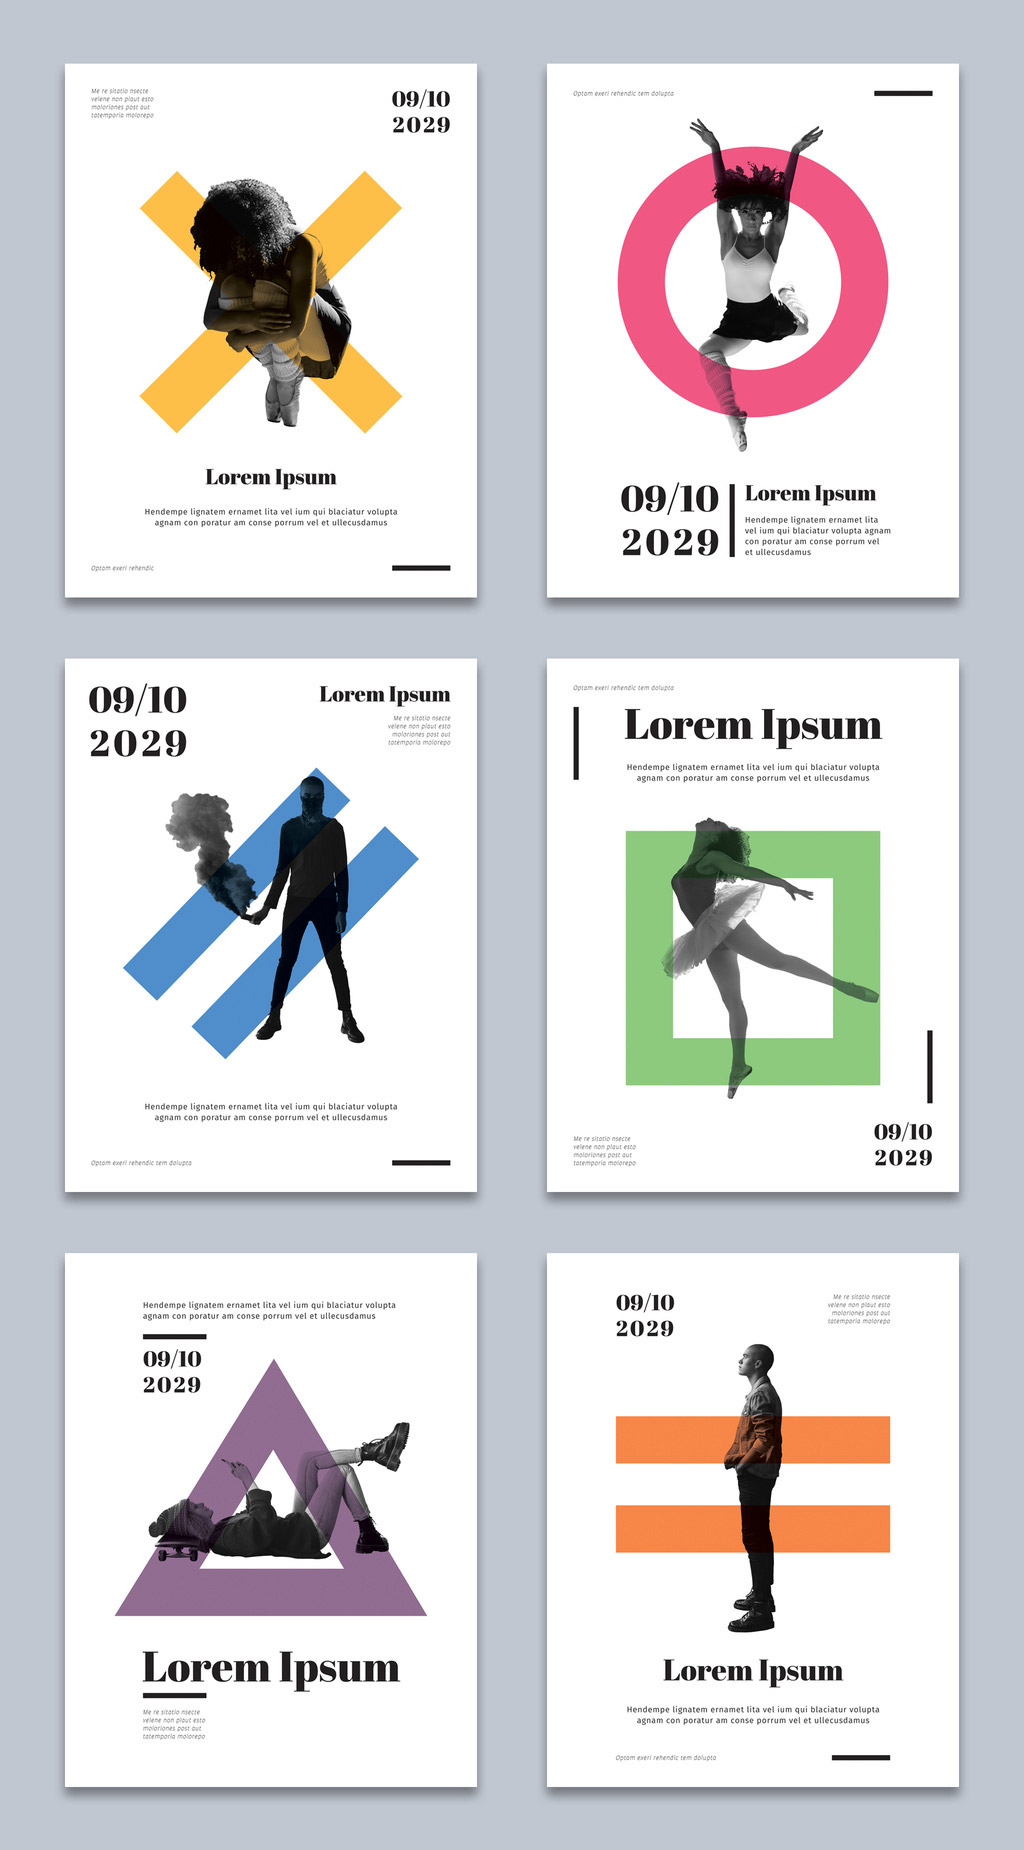 Conjunto de diseños de folletos geométricos para Adobe InDesign